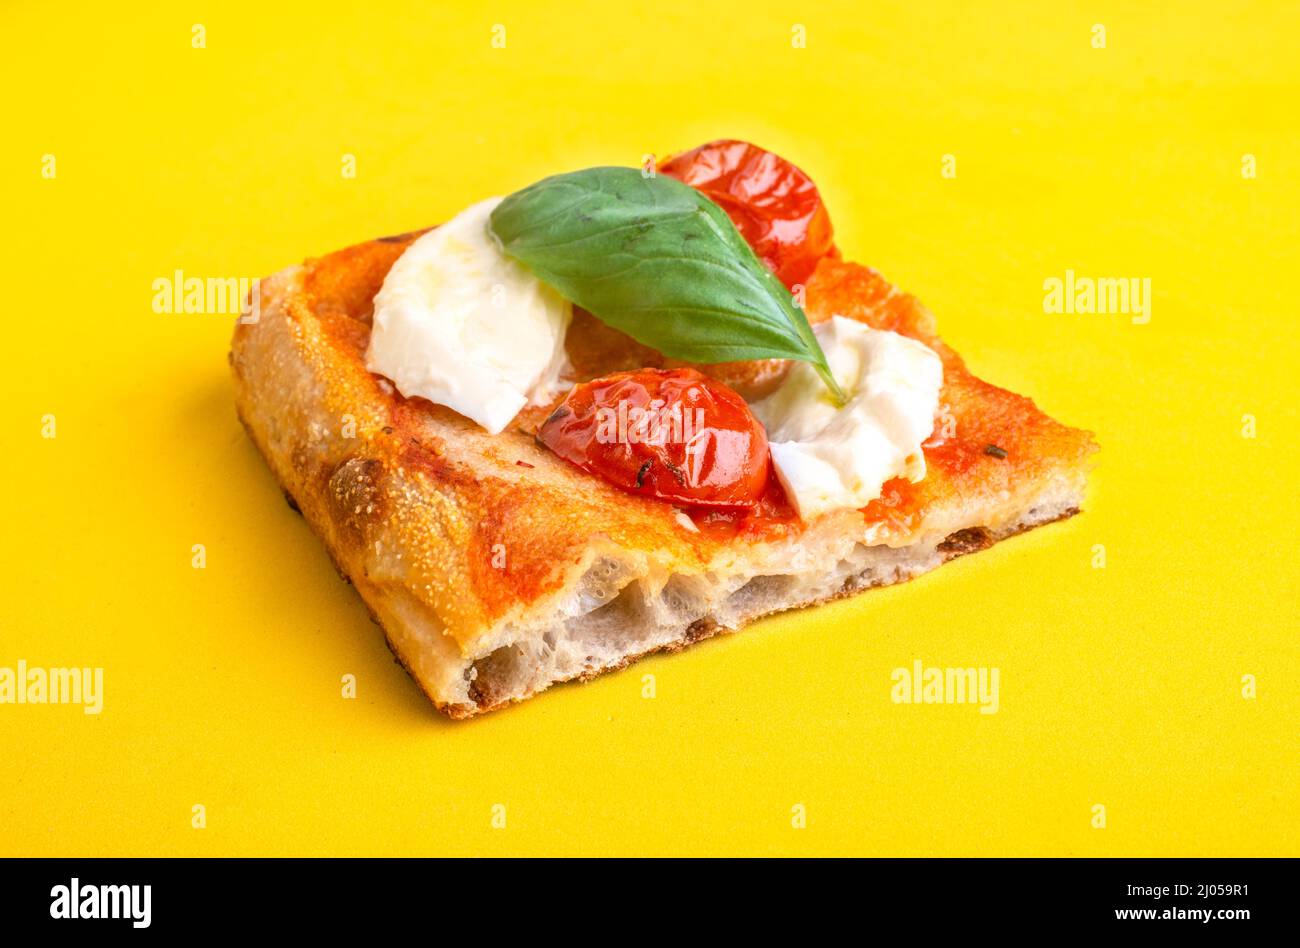 Un morceau de pizza al taglio avec tomate et mozzarella isolé sur fond jaune Banque D'Images